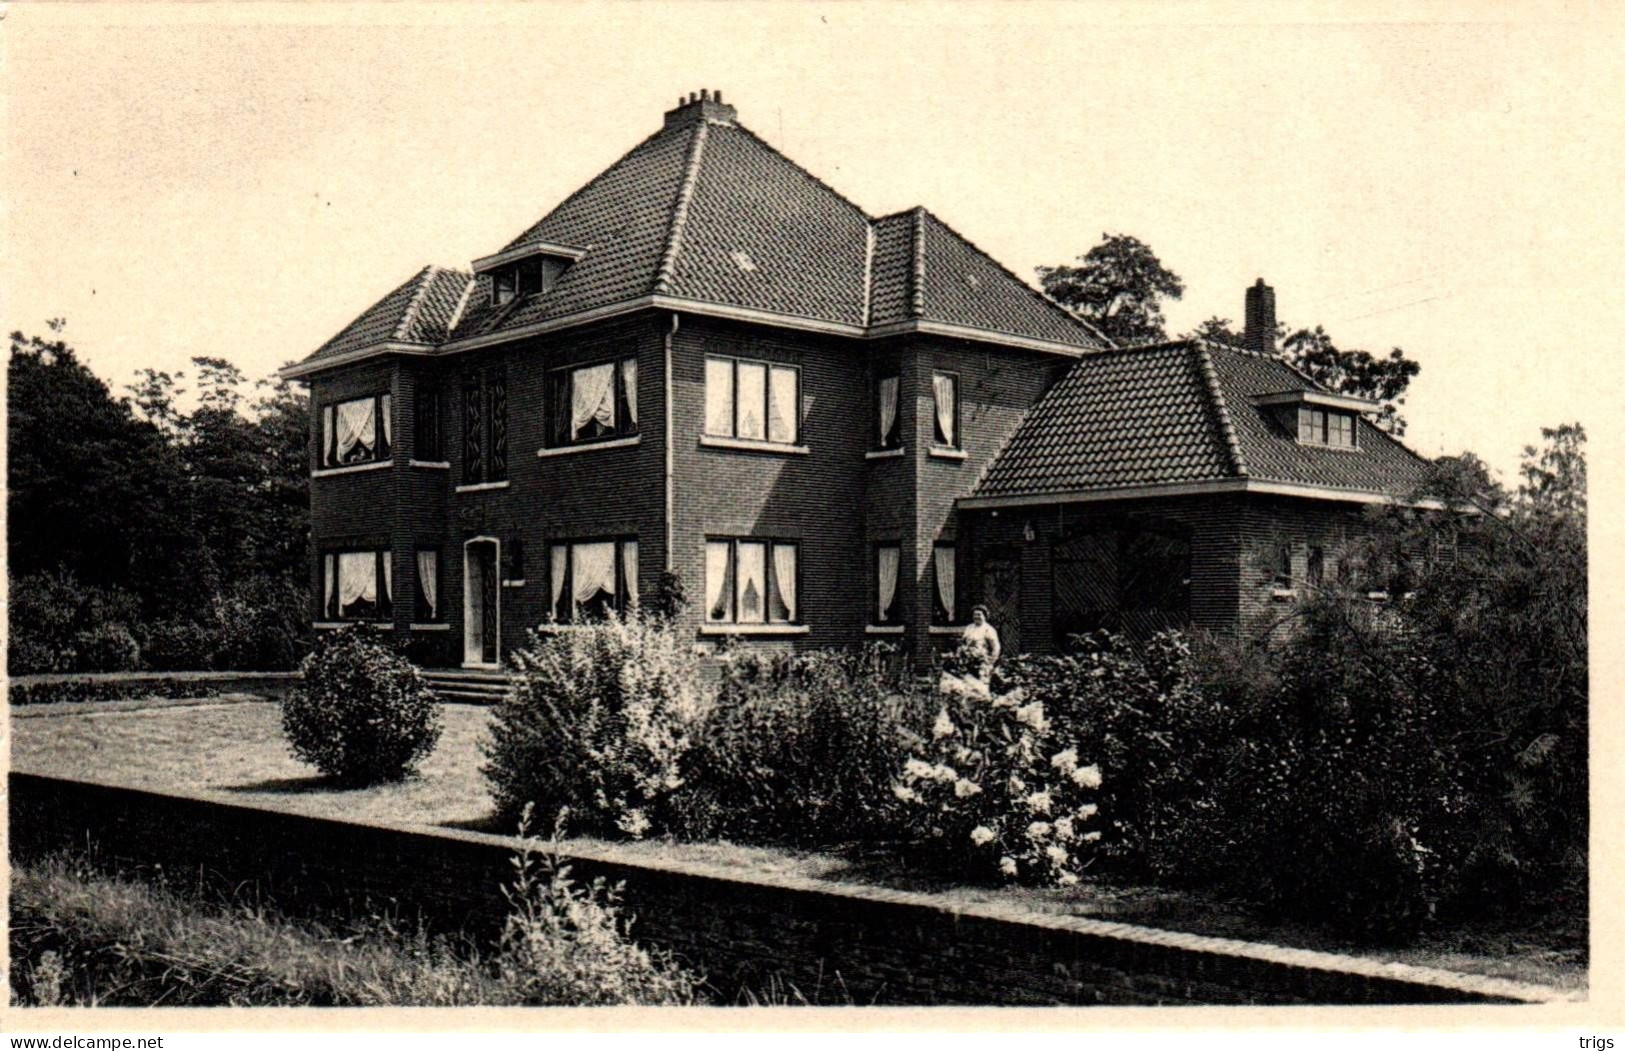 Hechtel - Villa Scheelen Braeken - Hechtel-Eksel